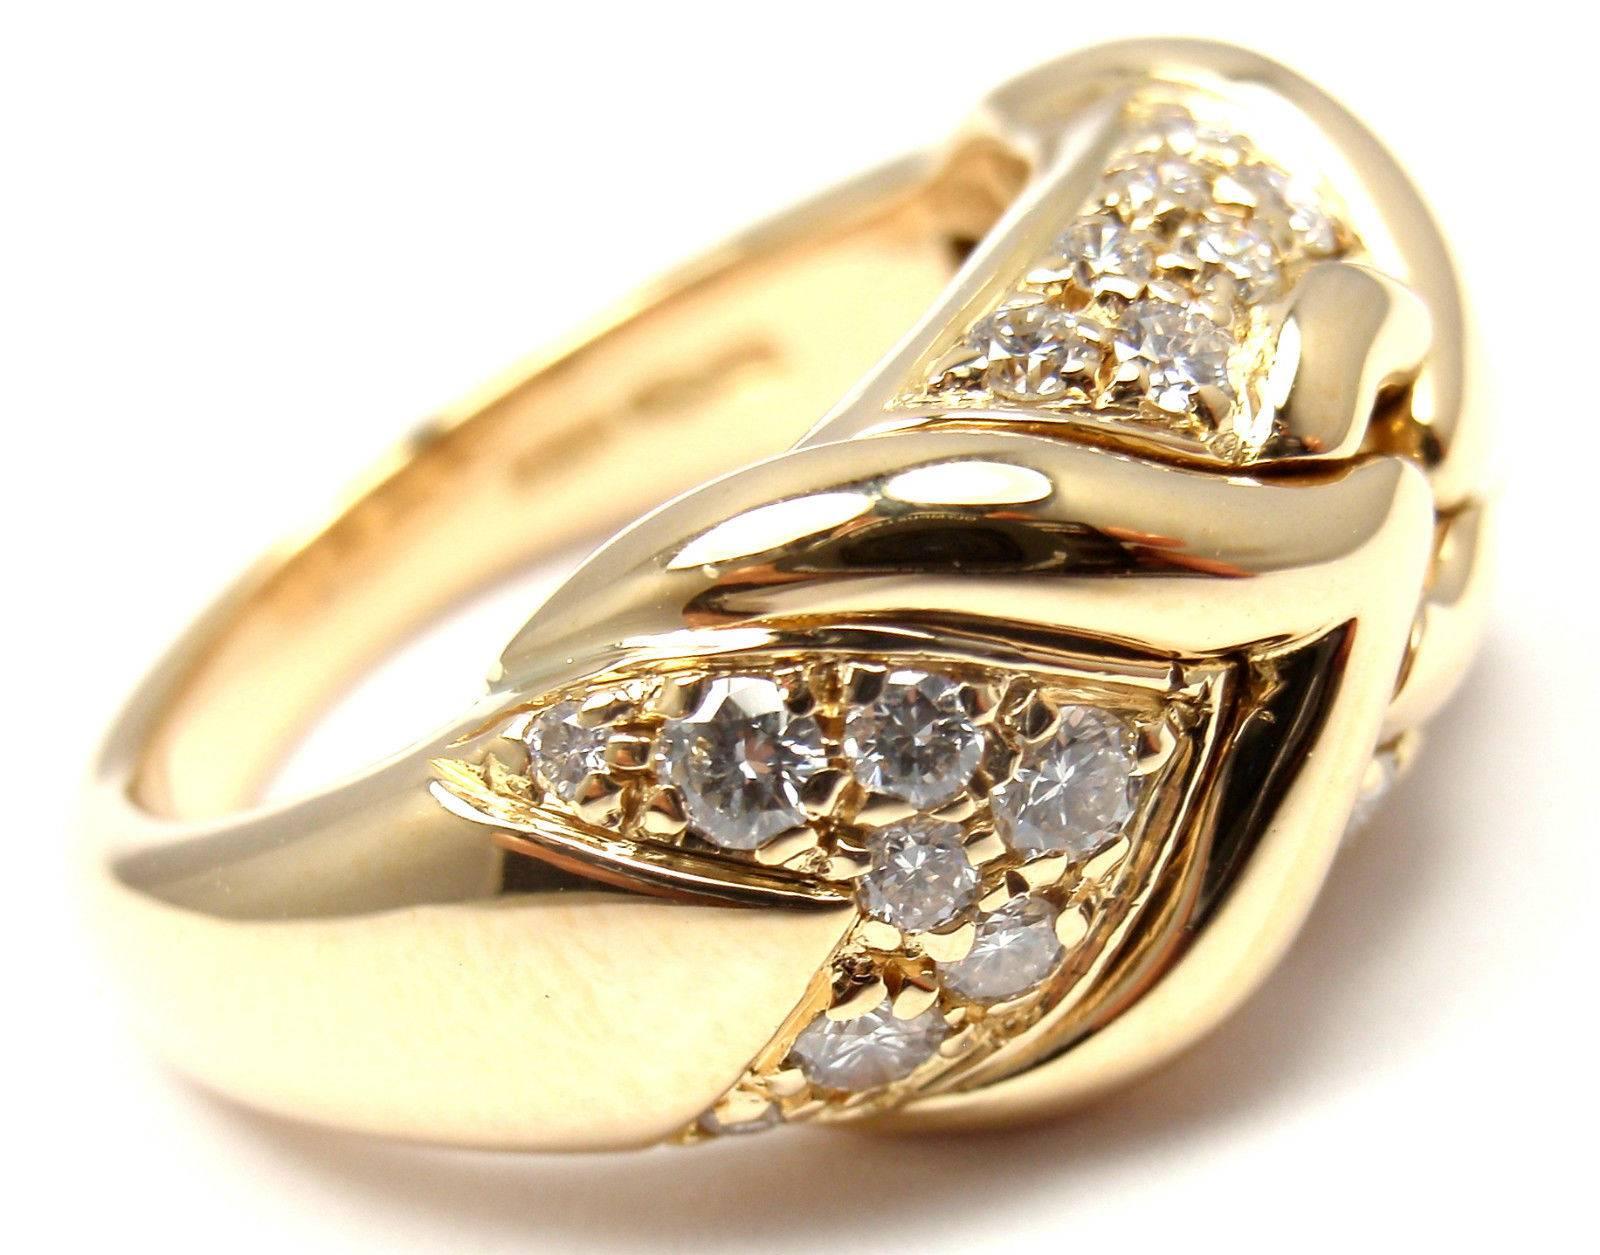 18k Gelbgold Diamant Ring von Bulgari. 
Mit 30 runden Diamanten ca. .75ct Gesamtgewicht VS1 Klarheit, E Farbe

Einzelheiten: 
Ringgröße: 5.5
Gewicht: 10,6 Gramm 
Breite: 10 mm 
Punzierungen: Bvlgari Made in Italy 750

*Kostenloser Versand